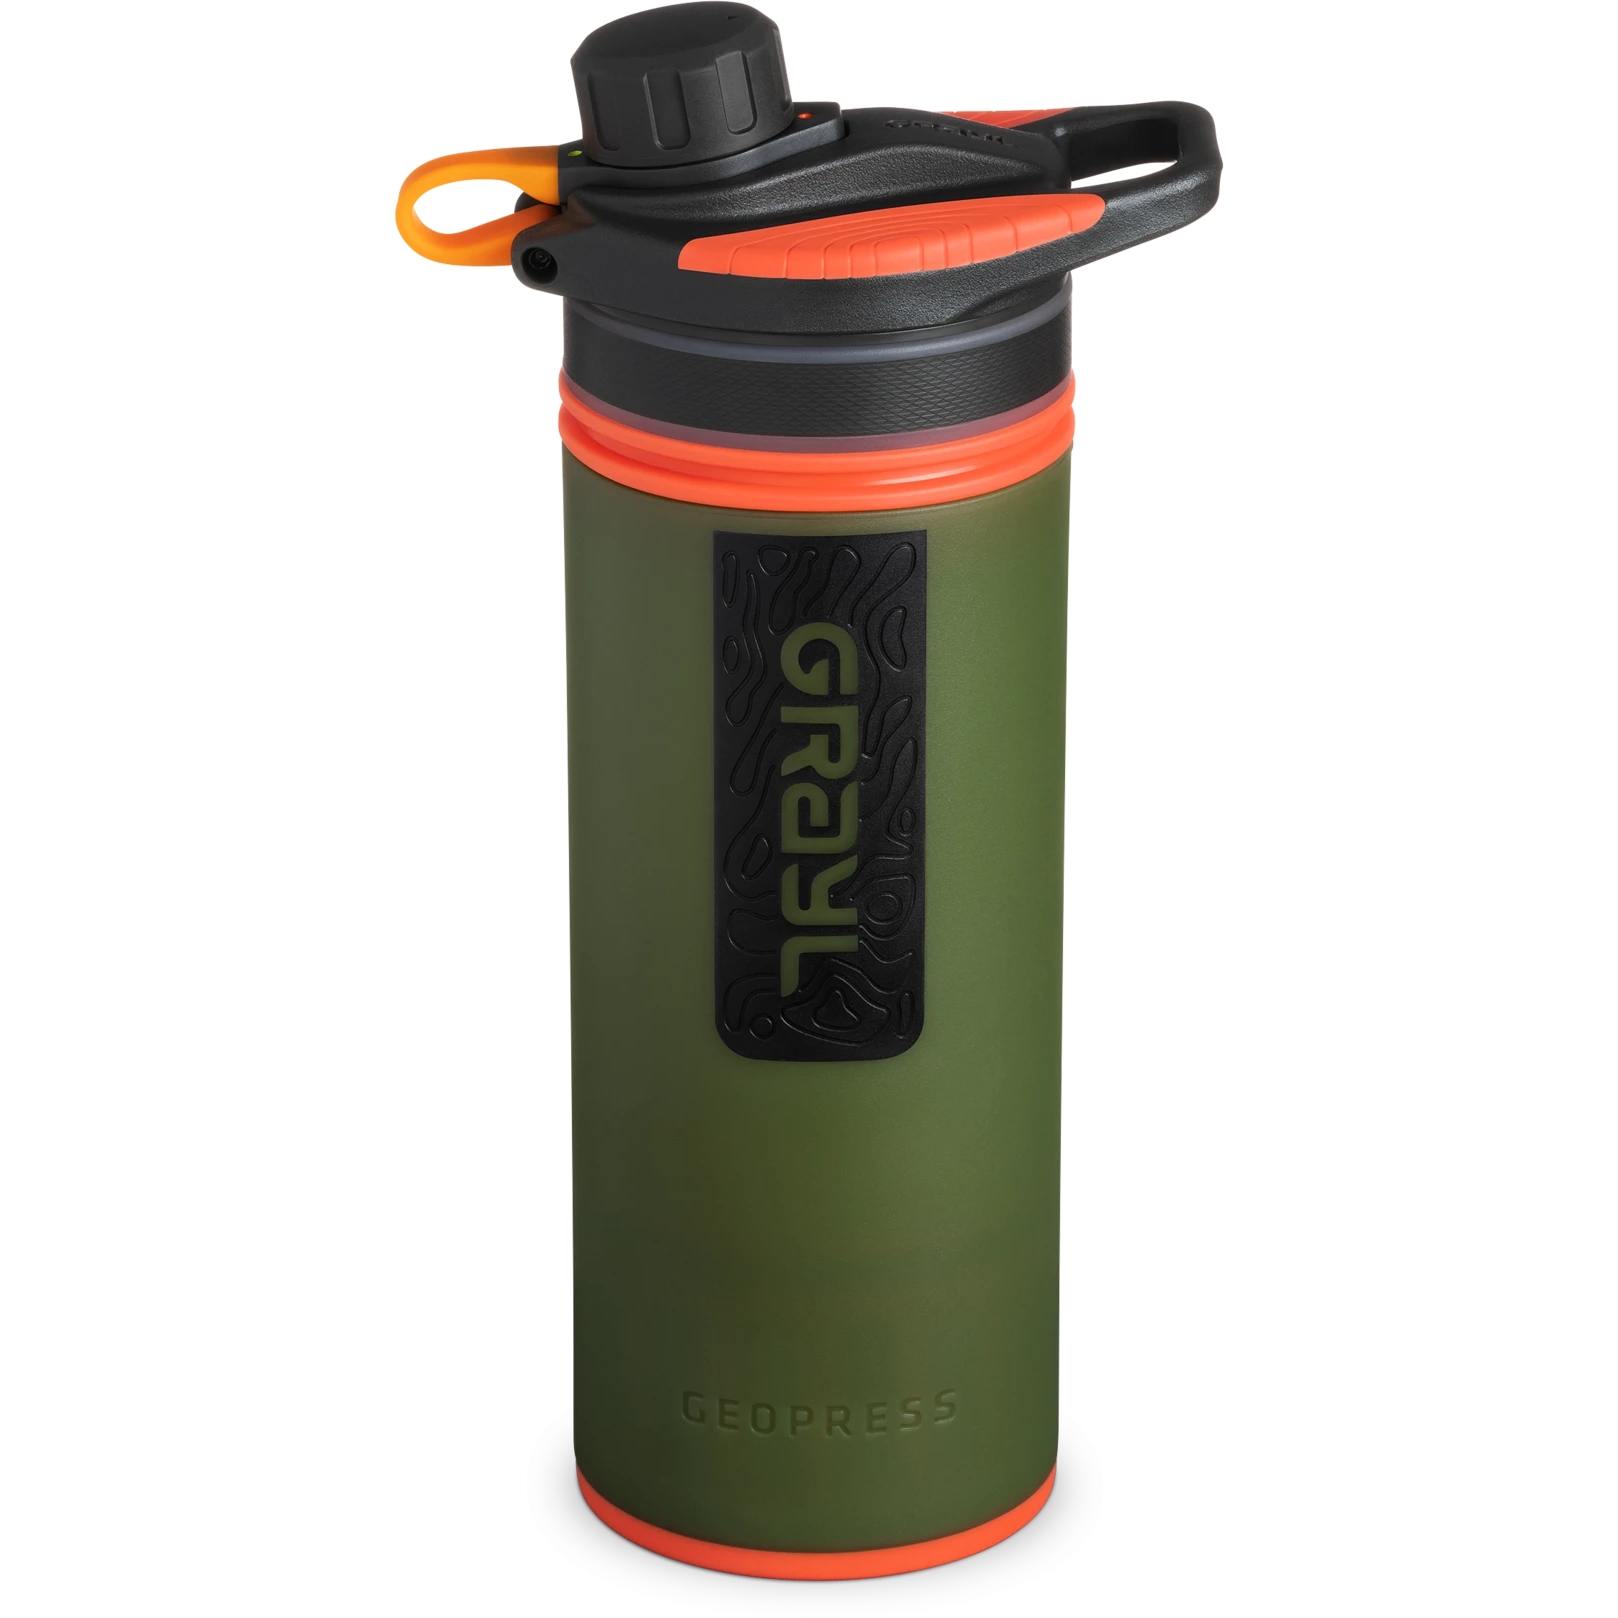 Produktbild von Grayl GeoPress Trinkflasche mit Wasserfilter - 710ml - Oasis Green